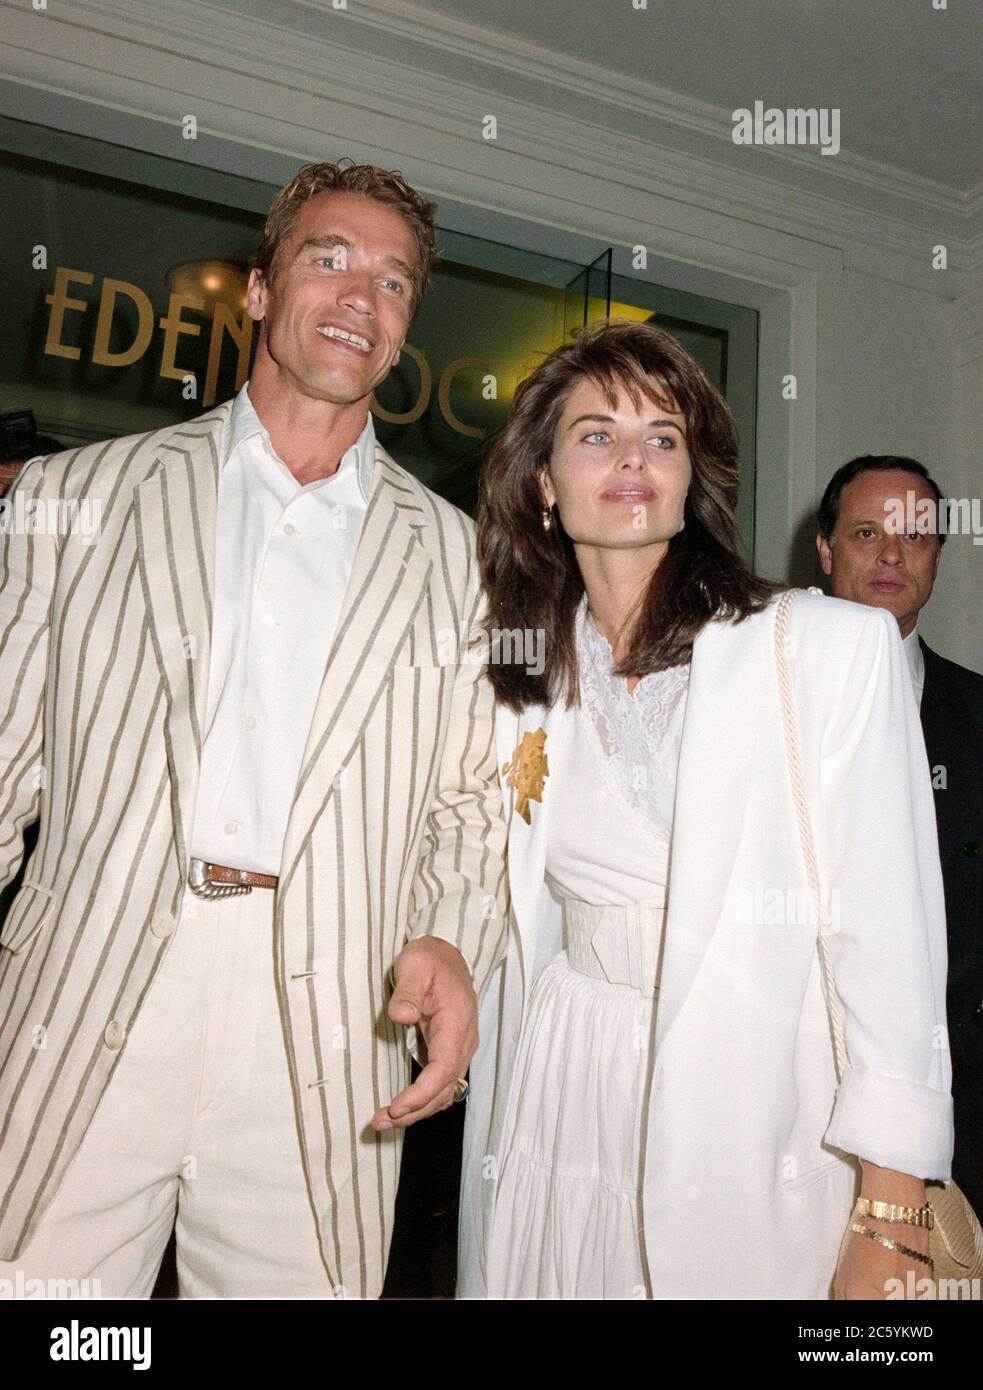 ARCHIV: CANNES, FRANKREICH. C. Mai 1991: Arnold Schwarzenegger & Maria Shriver bei den Filmfestspielen von Cannes. Datei Foto © Paul Smith/Featureflash Stockfoto